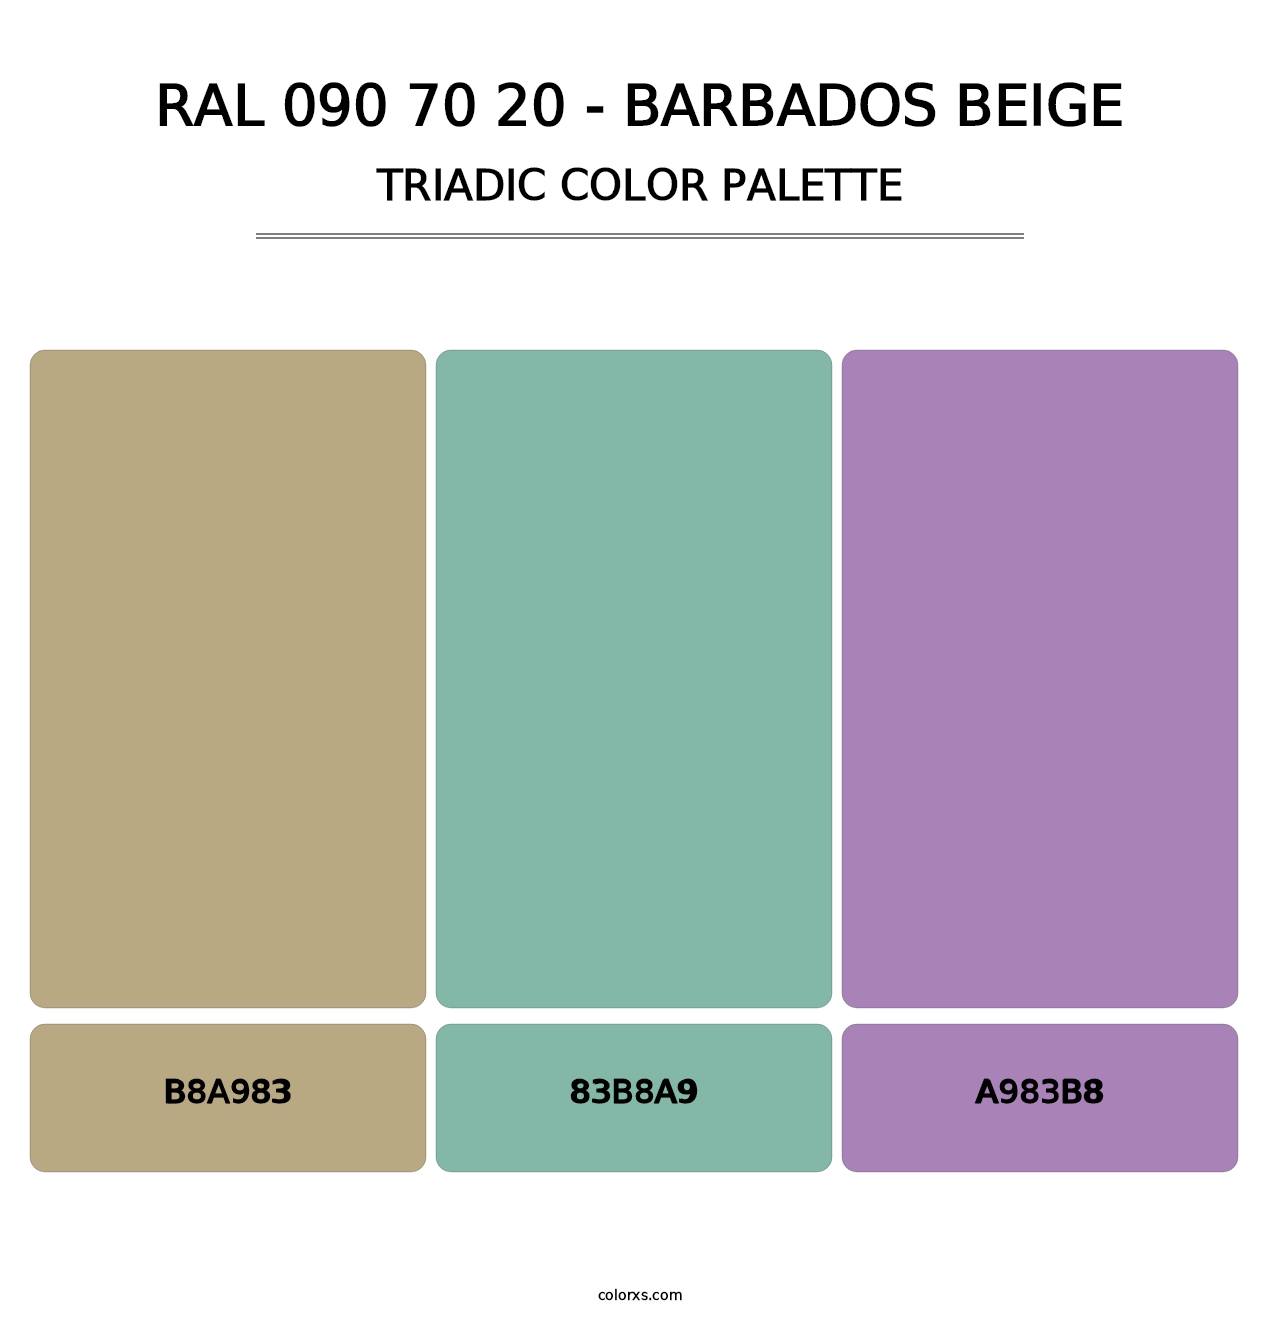 RAL 090 70 20 - Barbados Beige - Triadic Color Palette